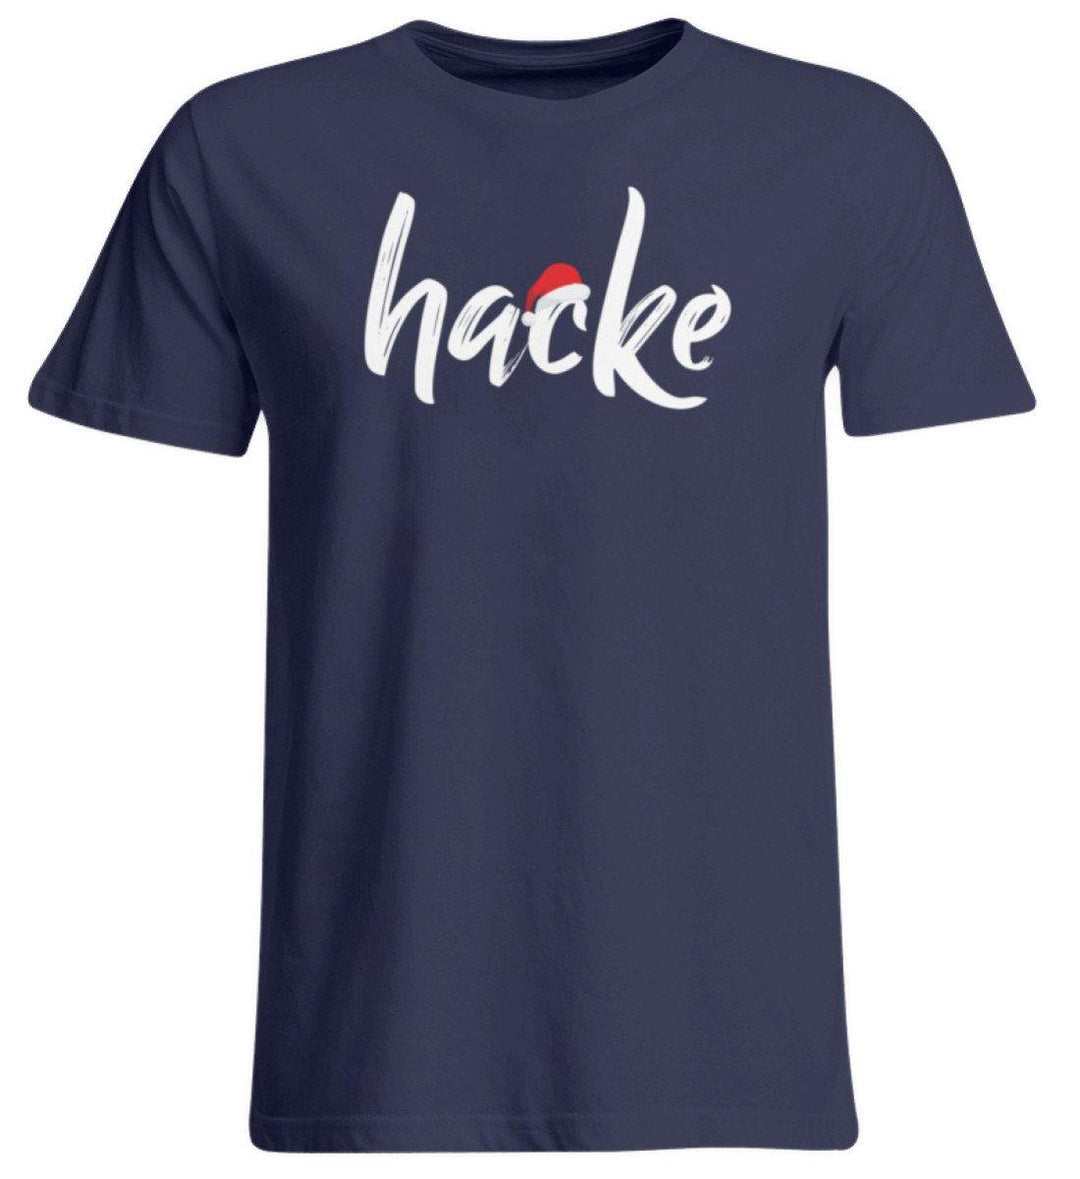 Hacke - Hacke Dicht - Words on Shirt  - Übergrößenshirt - Words on Shirts Sag es mit dem Mittelfinger Shirts Hoodies Sweatshirt Taschen Gymsack Spruch Sprüche Statement